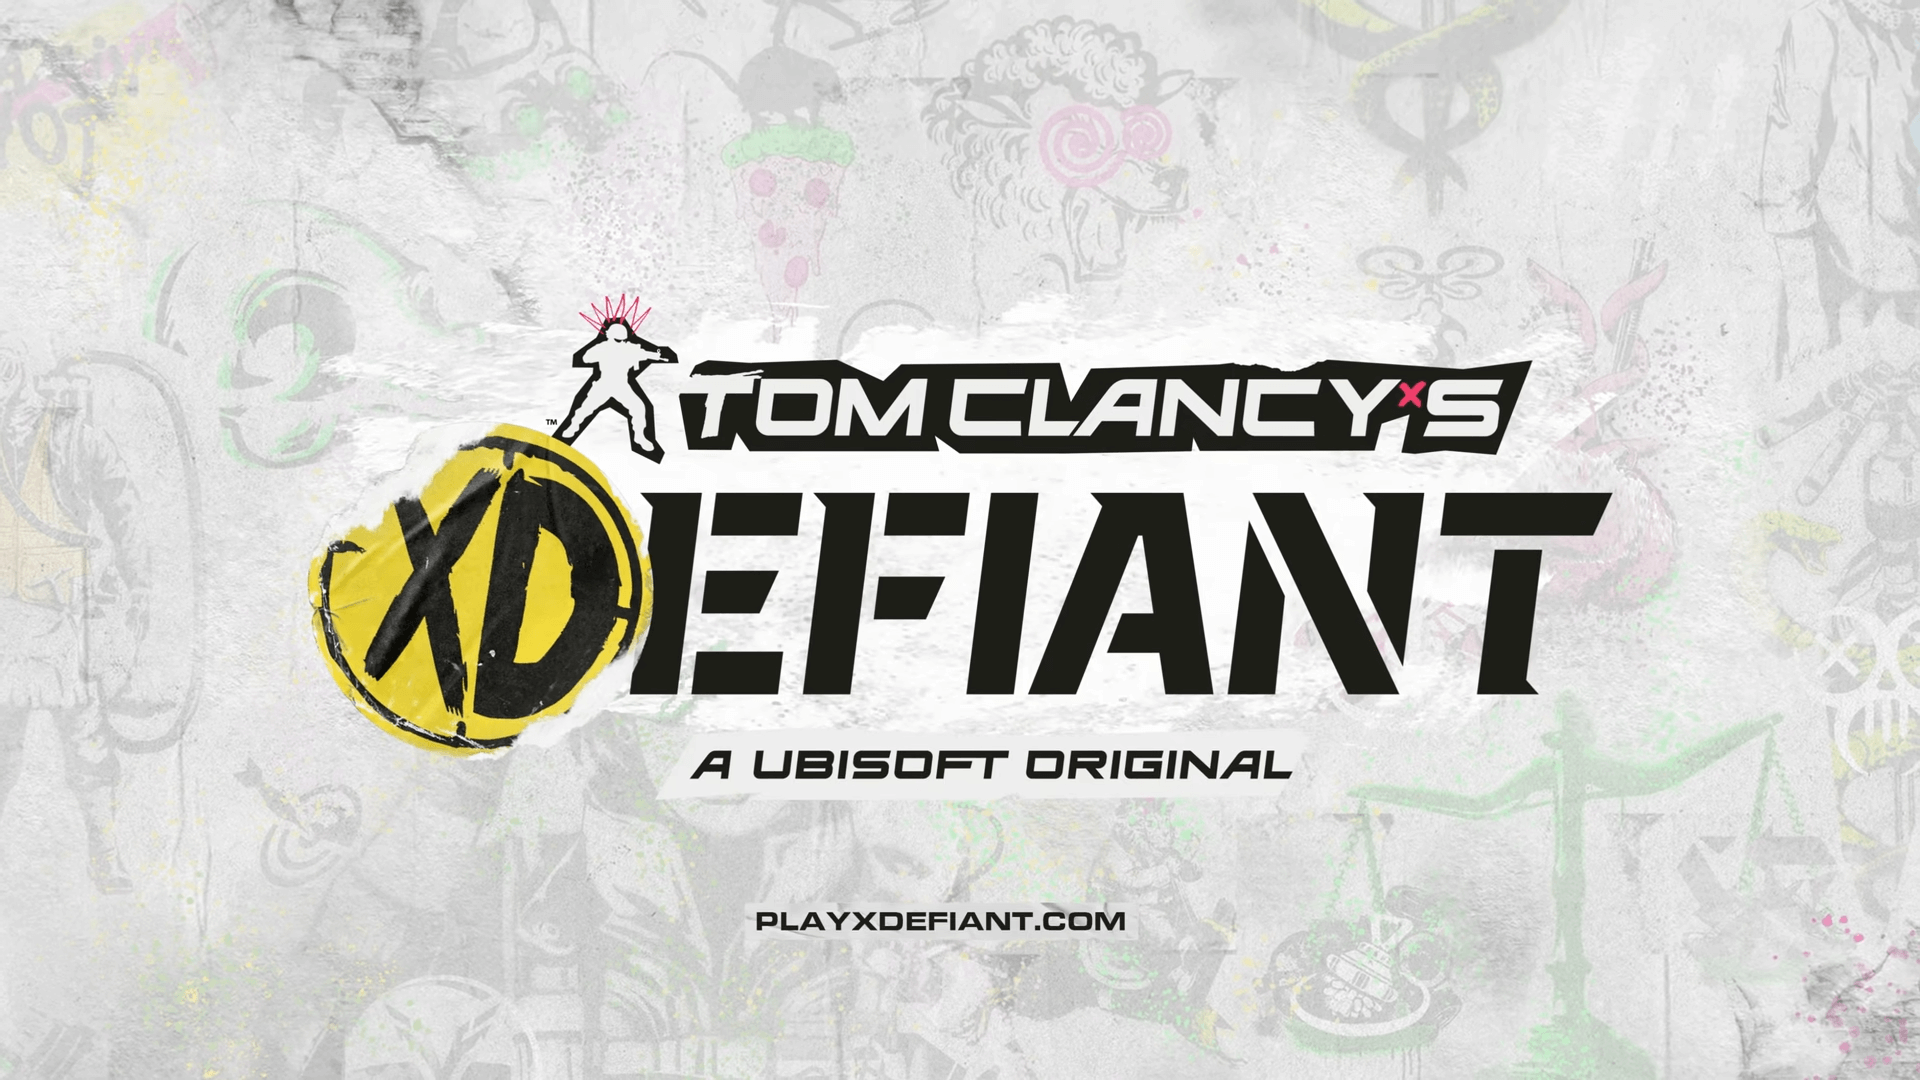 Ubisoft streicht Tom Clancy aus dem Namen XDefiant Titel